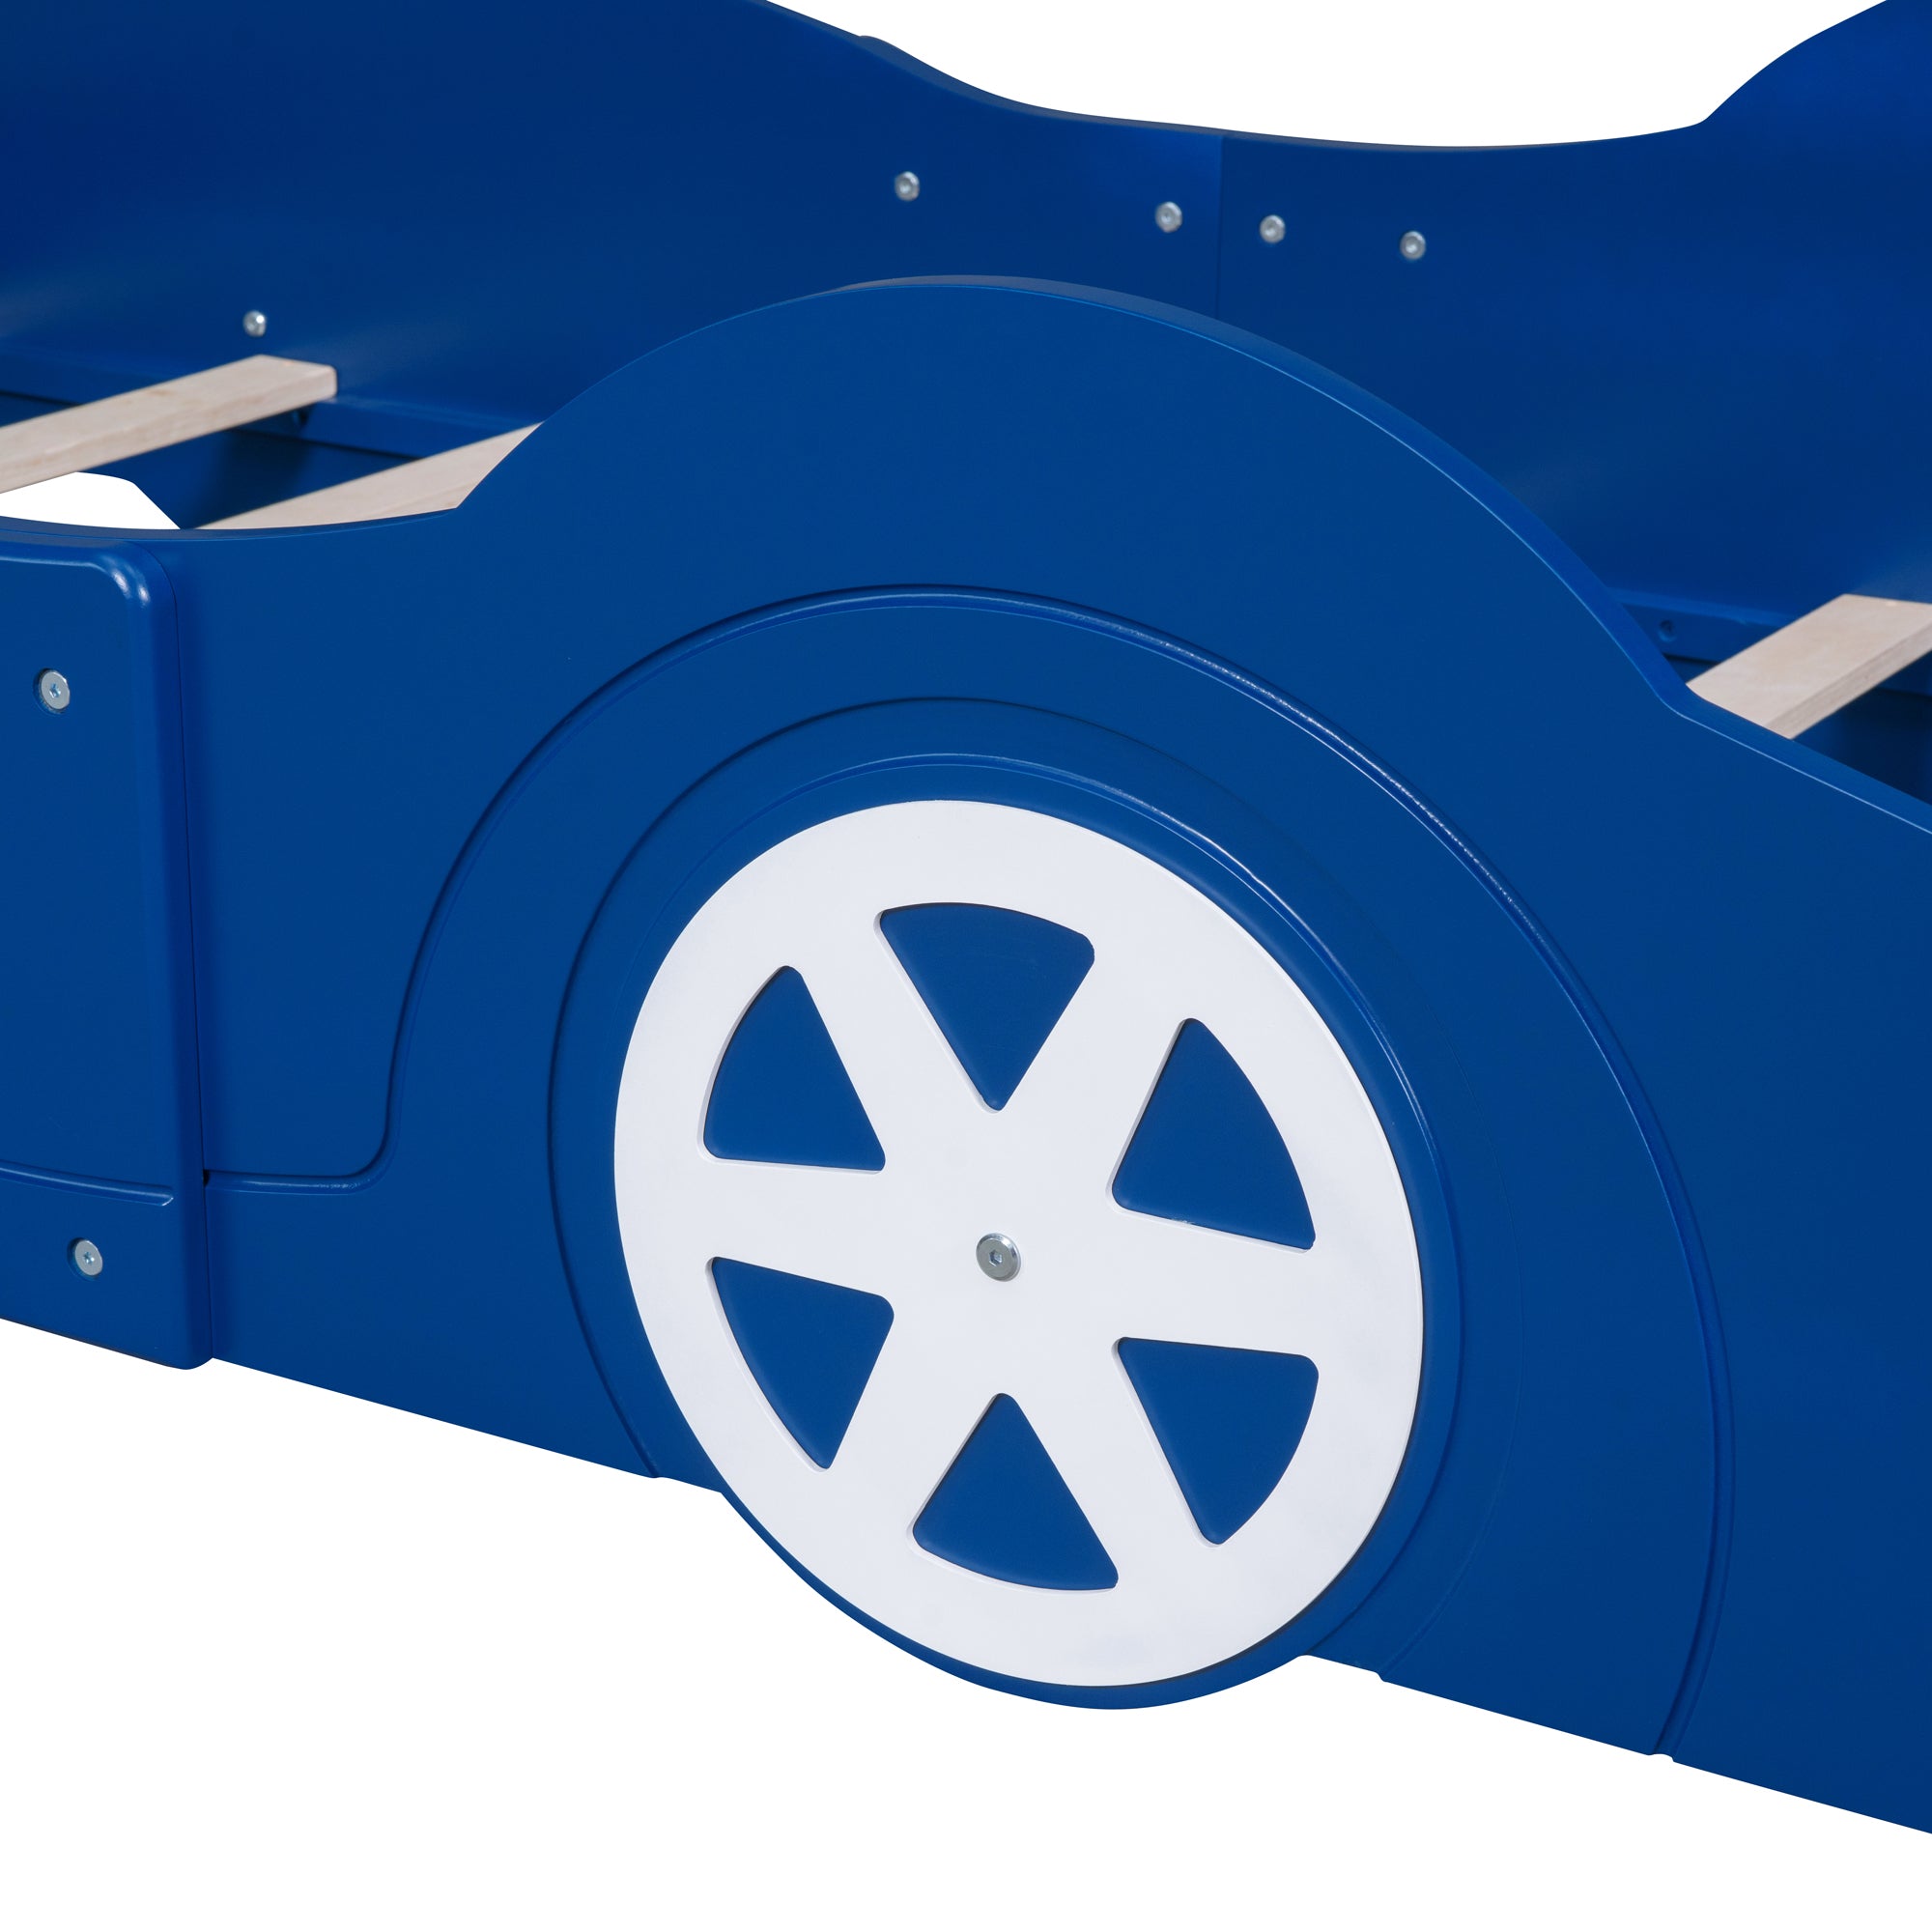 Bellemave Race Car-Shaped Platform Bed with Wheels - Bellemave